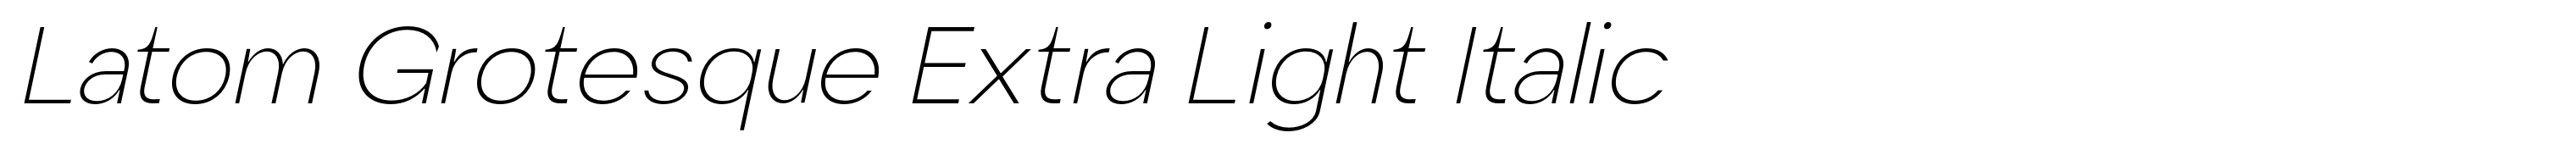 Latom Grotesque Extra Light Italic